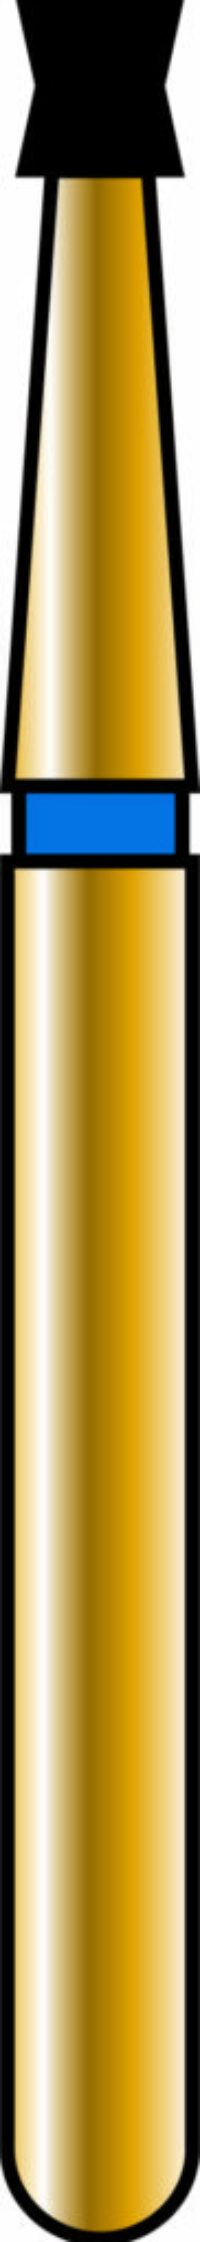 Double Cone 14-1.5mm Gold Diamond Bur - Coarse Grit